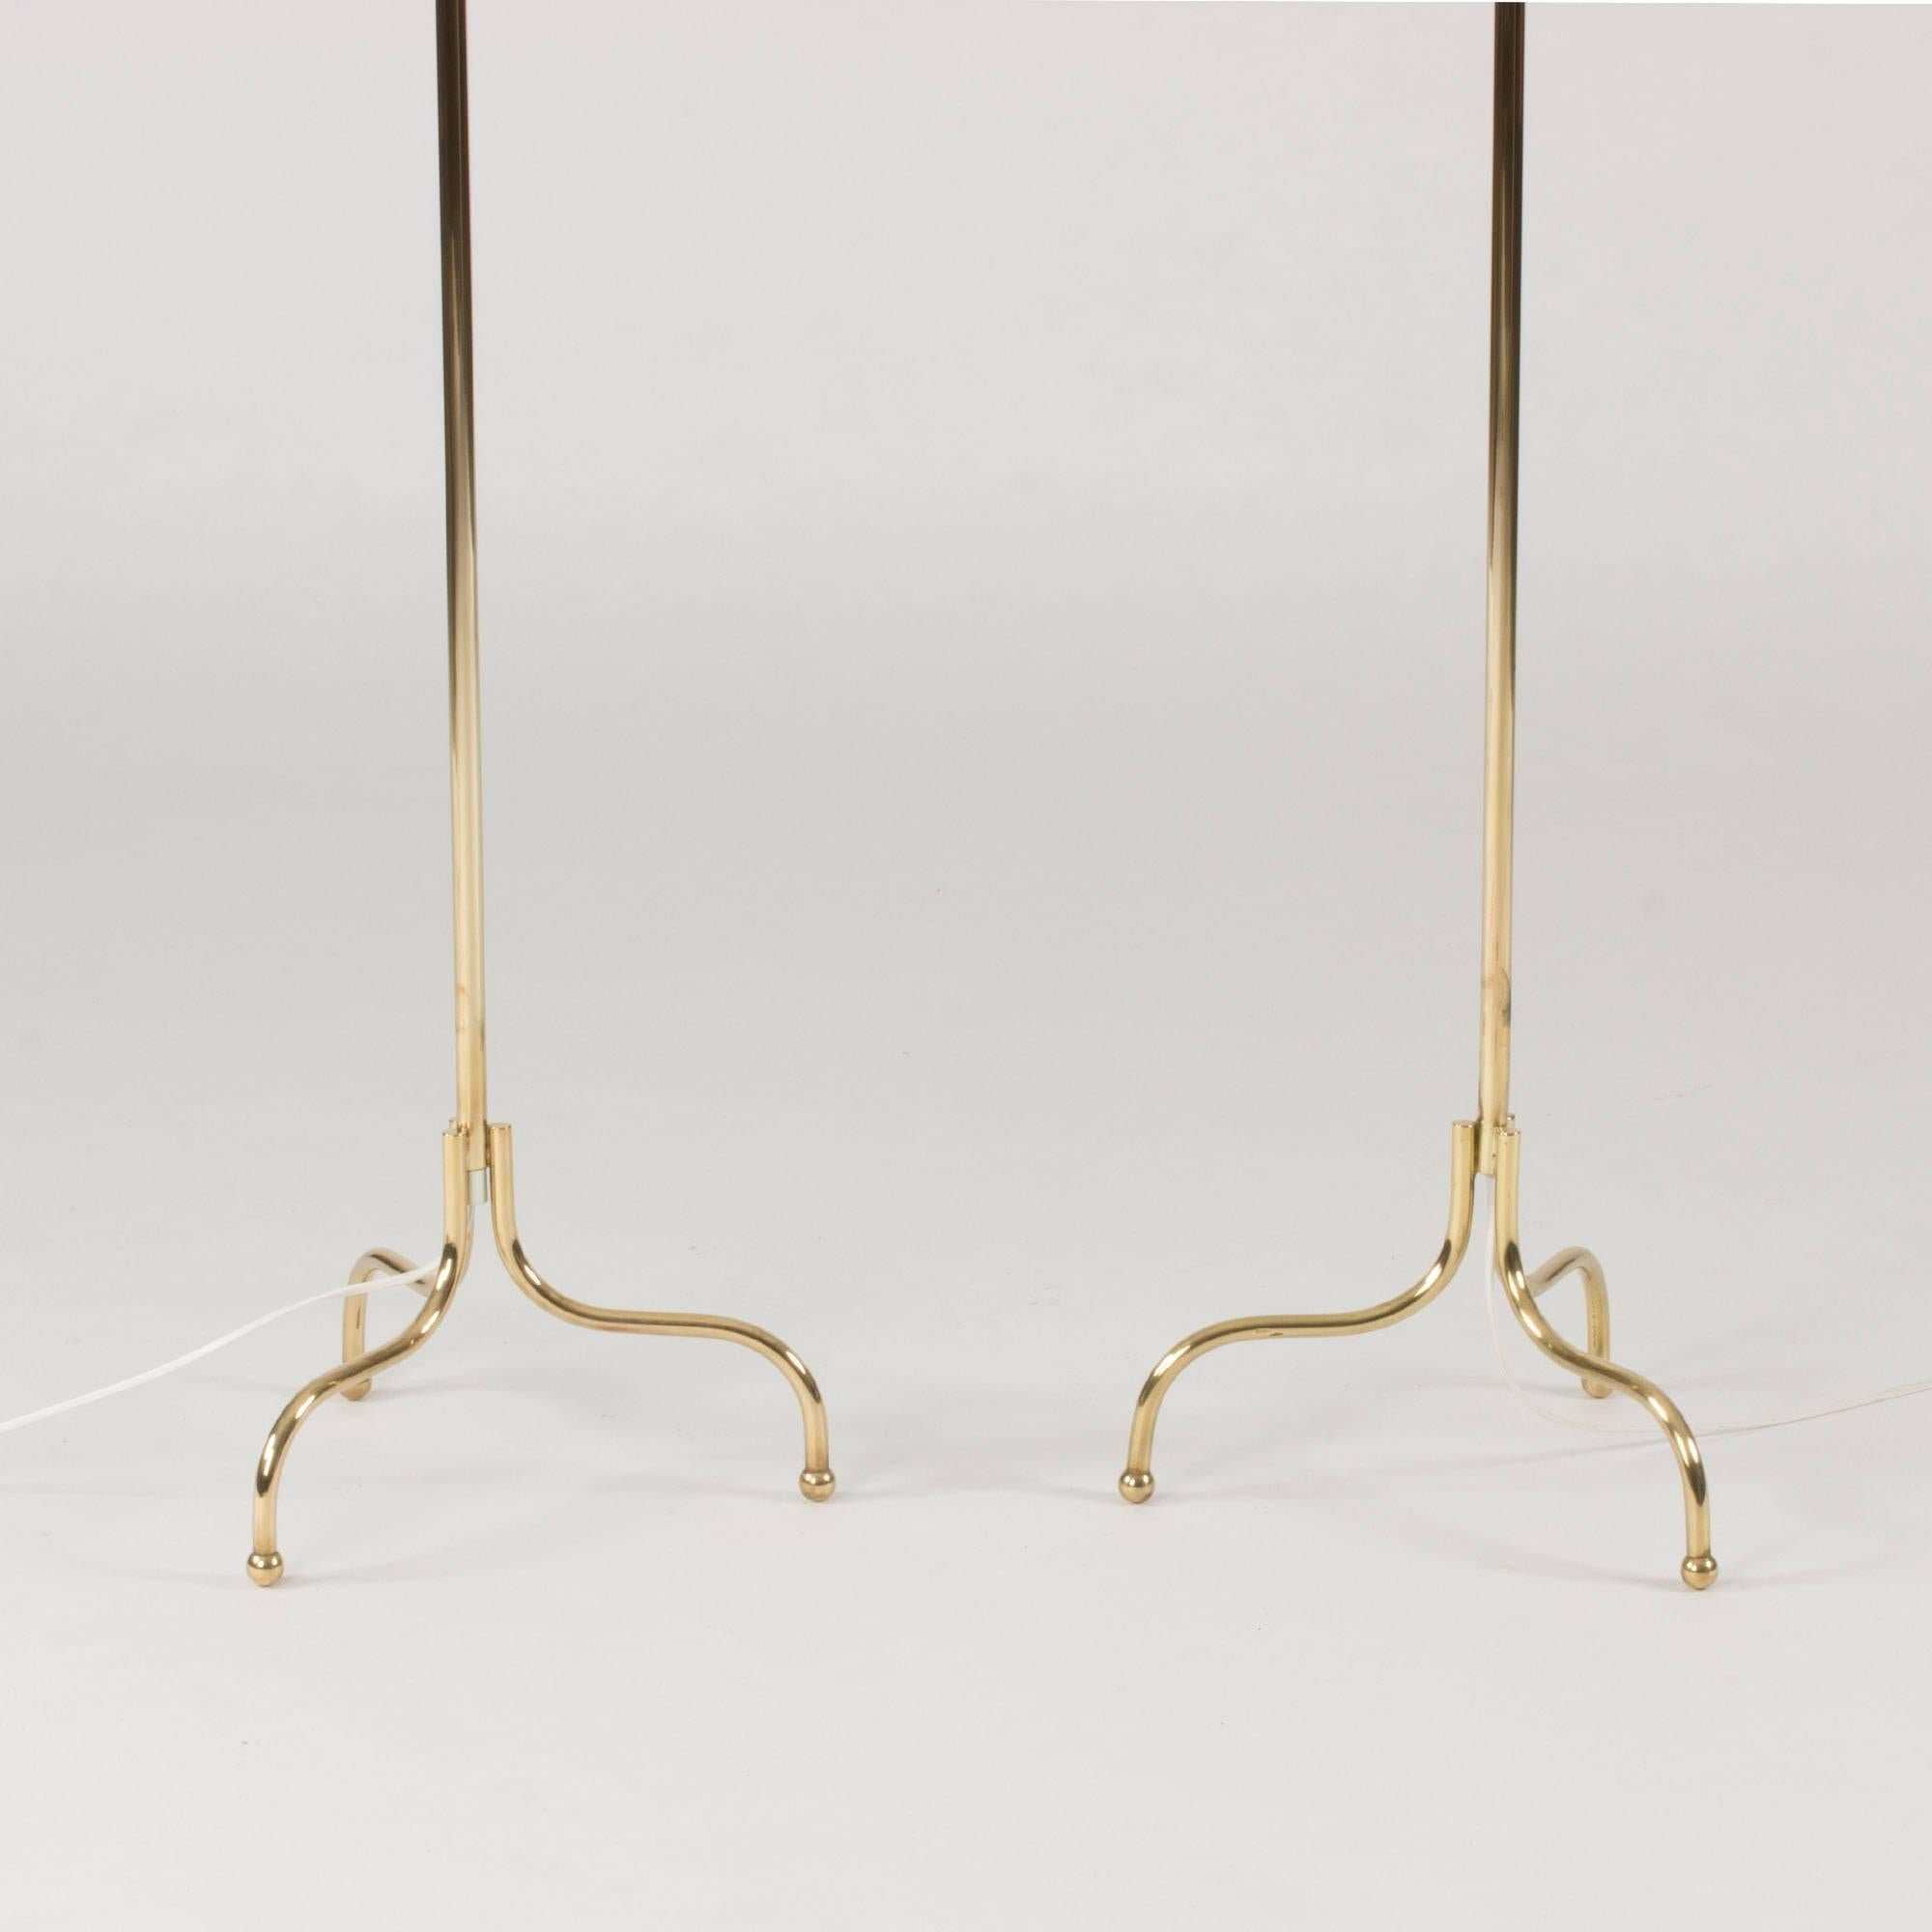 Scandinavian Modern Pair of Brass Floor Lamps by Josef Frank